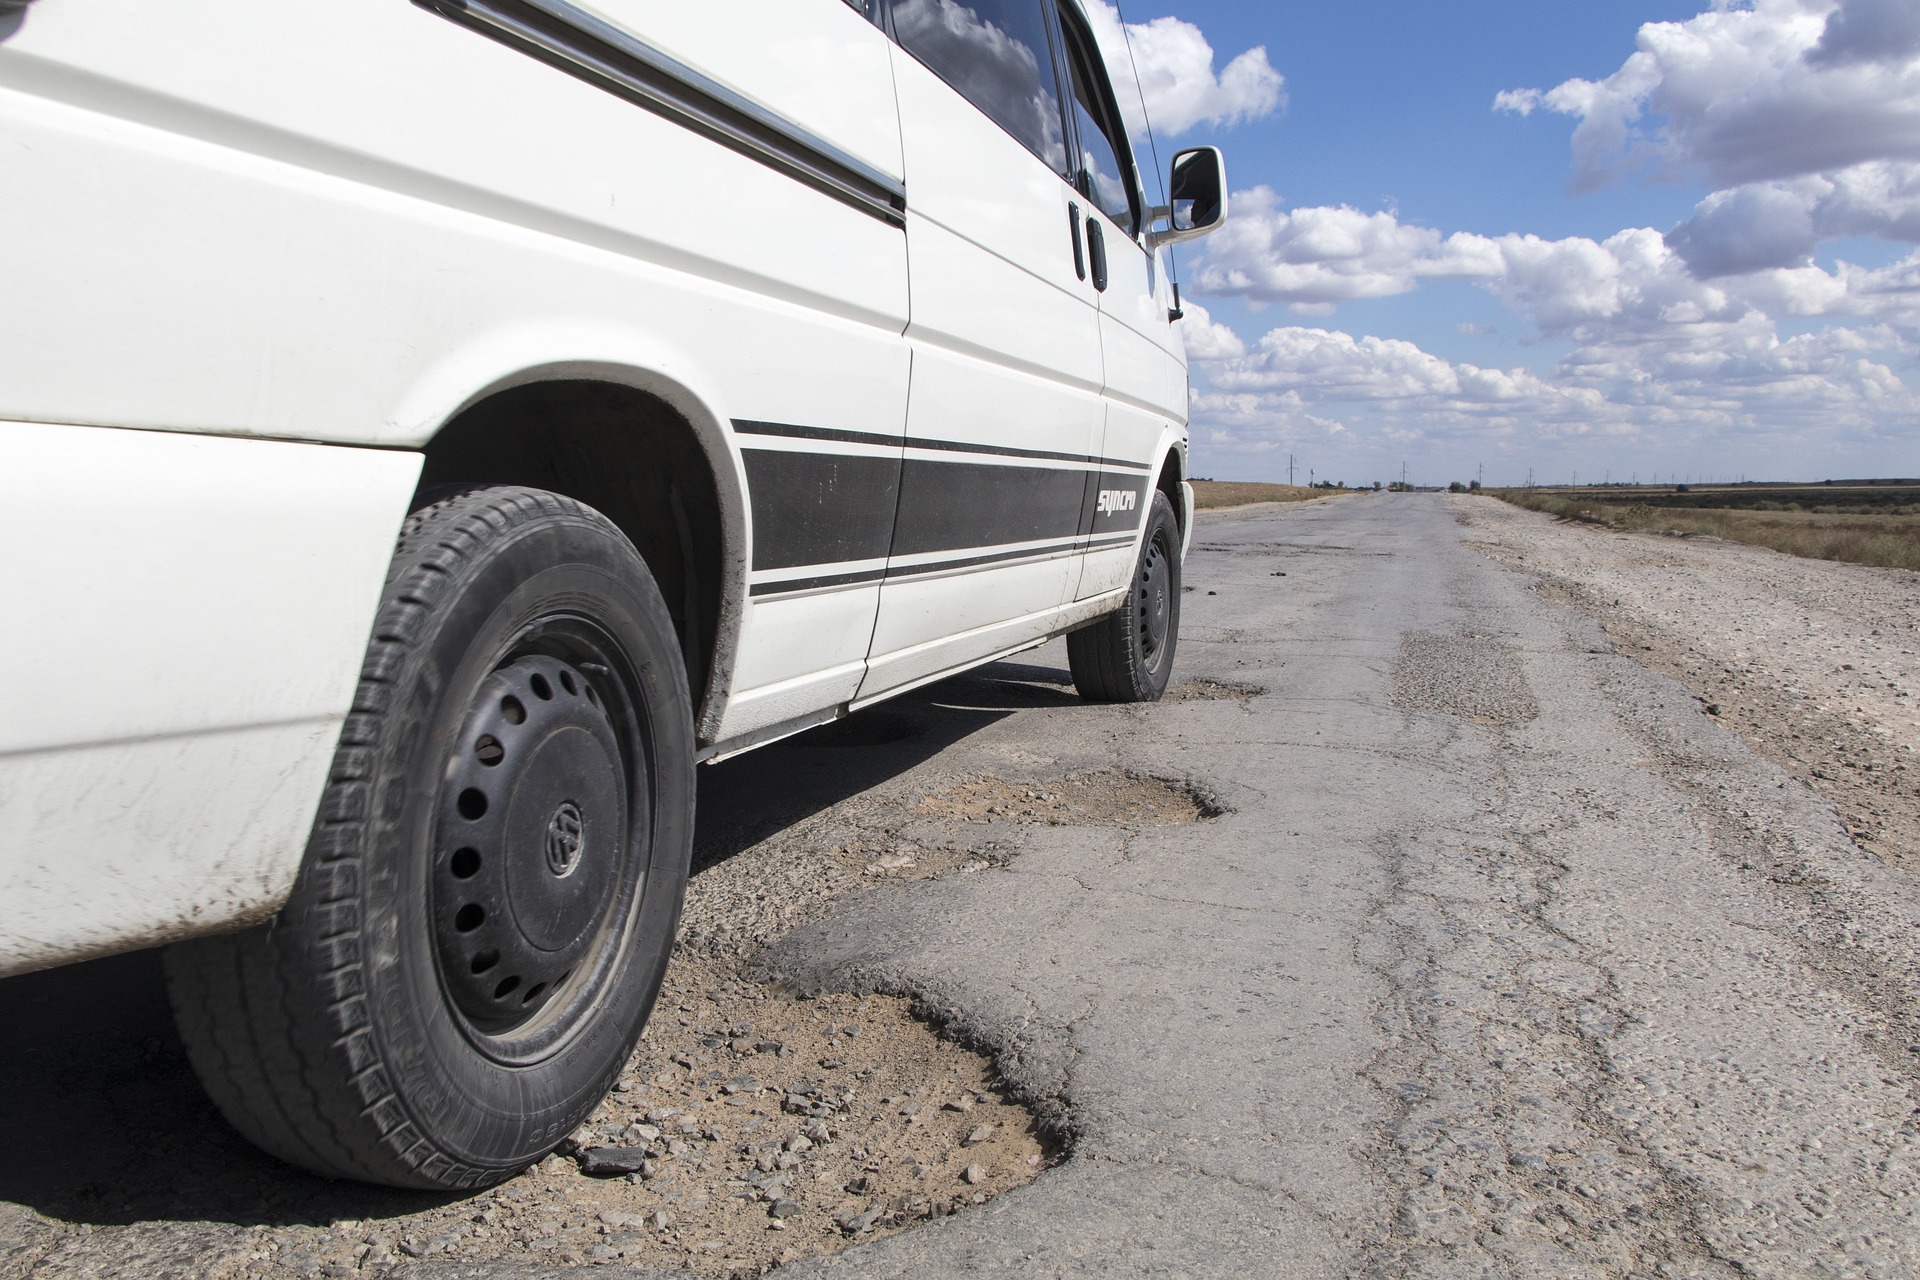 investigasi skala kecil vice: bagaimana cara melaporkan jalan rusak untuk diperbaiki?